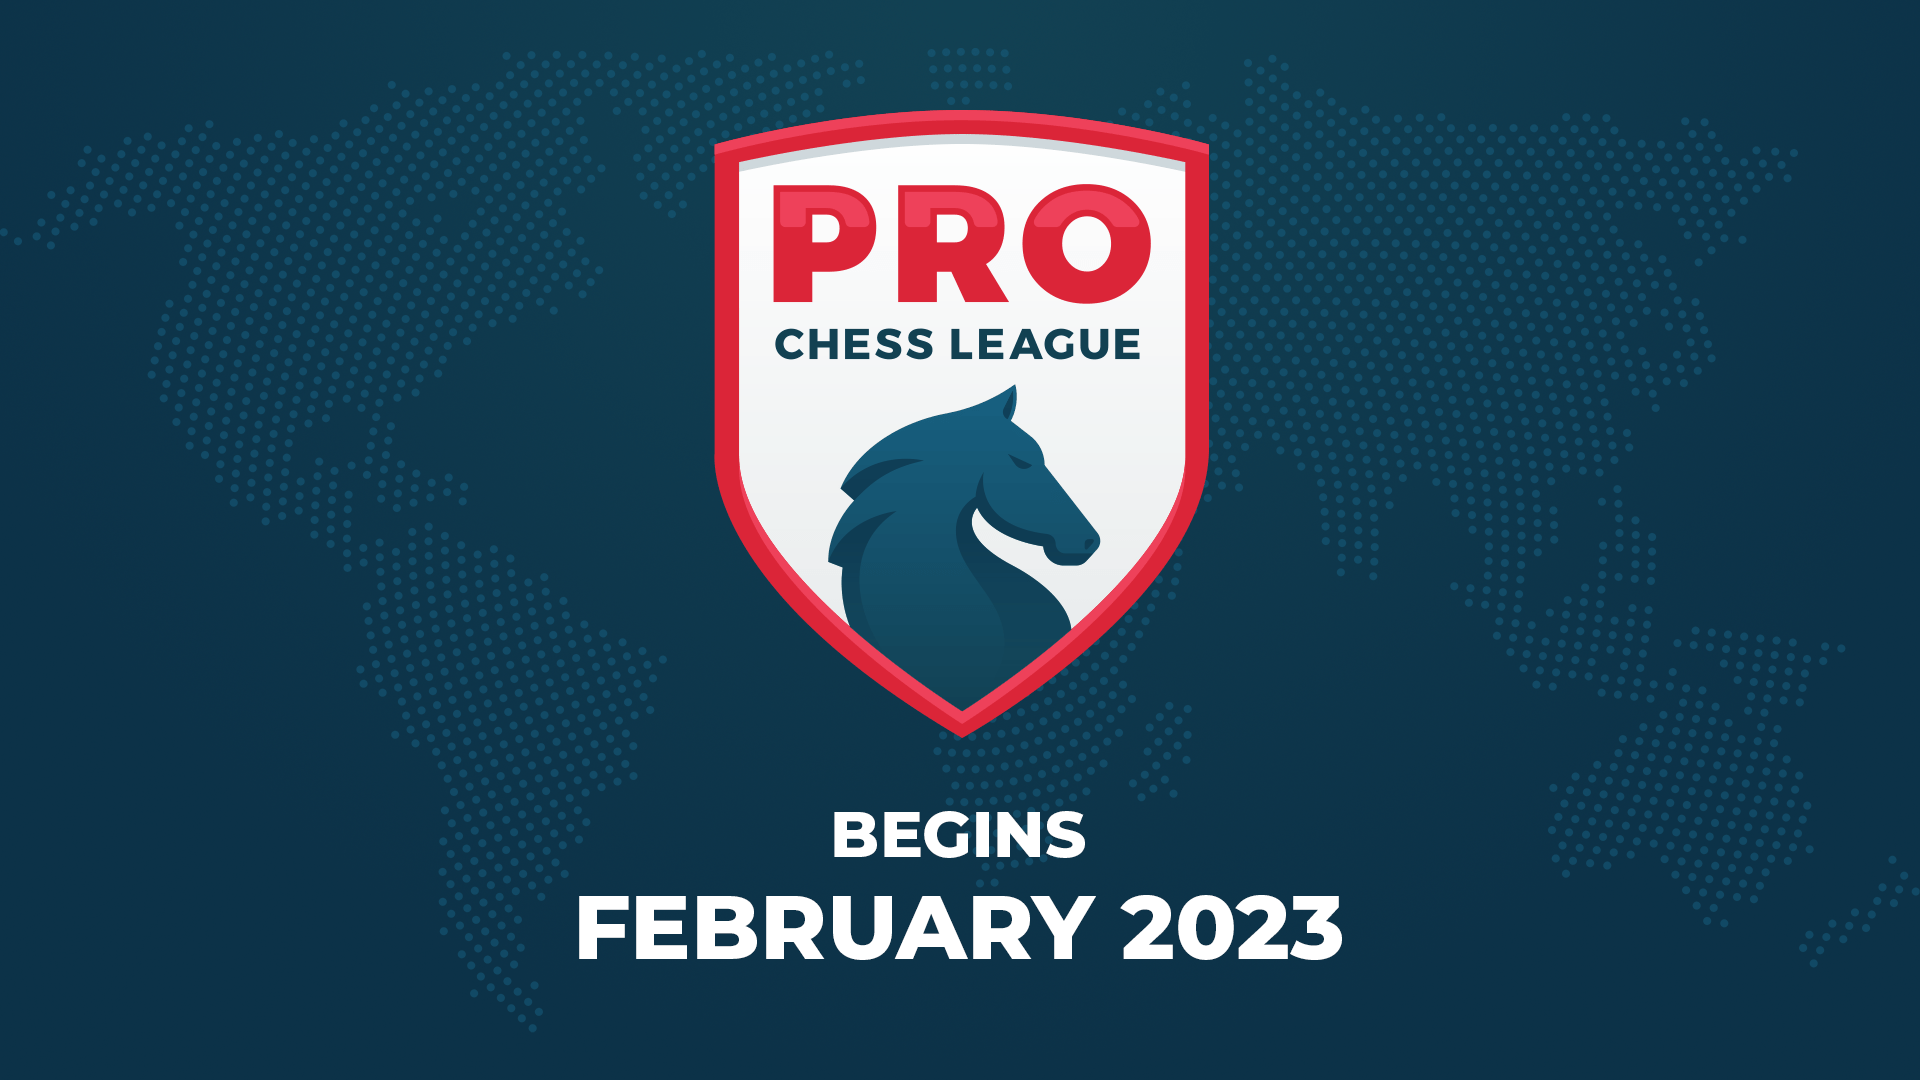 Chess.com Announces The Return Of The Pro Chess League - Chess.com